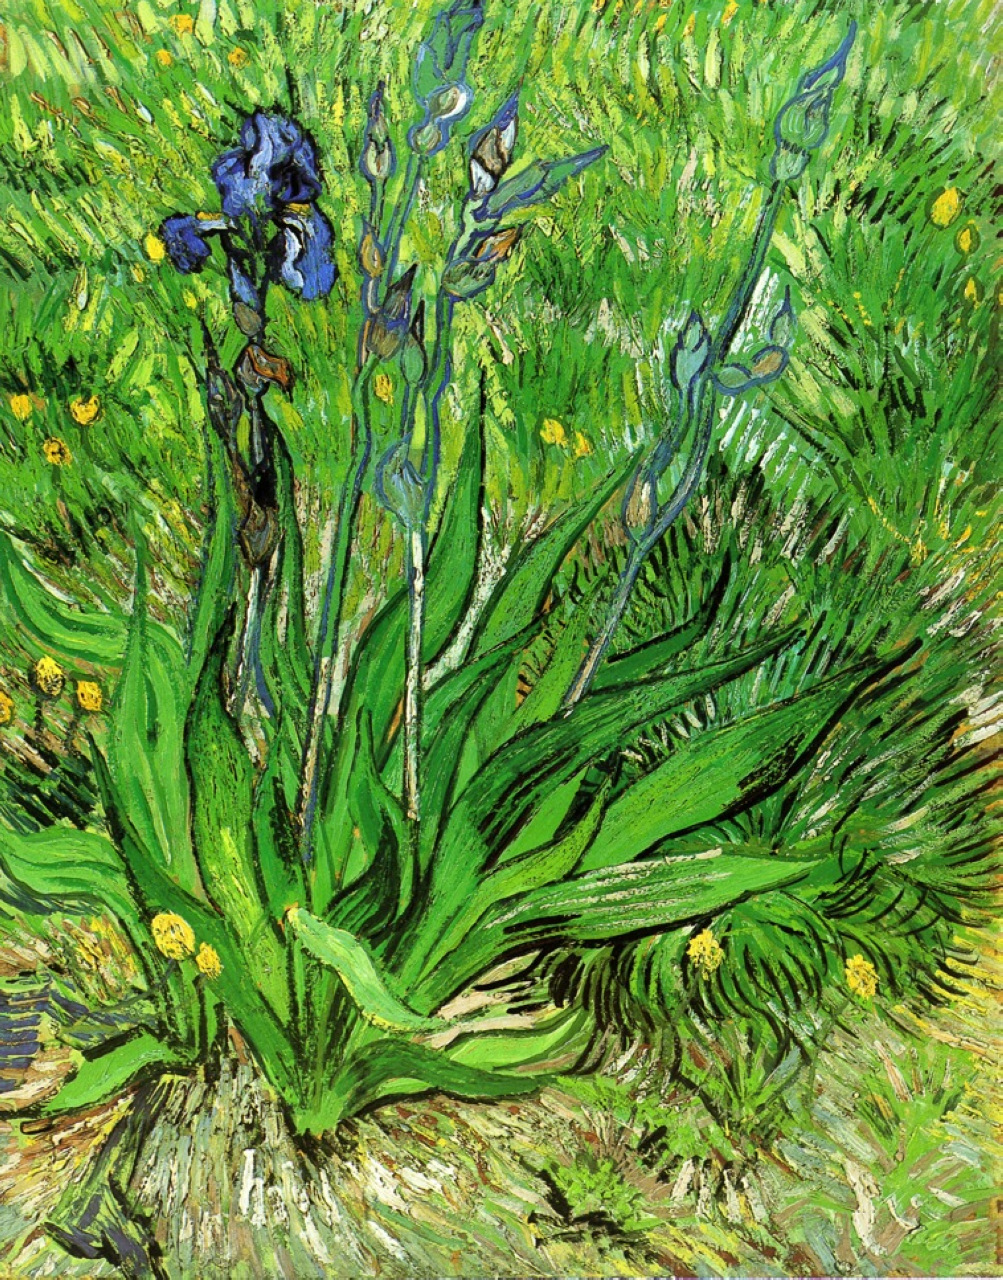 El iris by Vincent van Gogh - 1889 Galería Nacional de Canadá